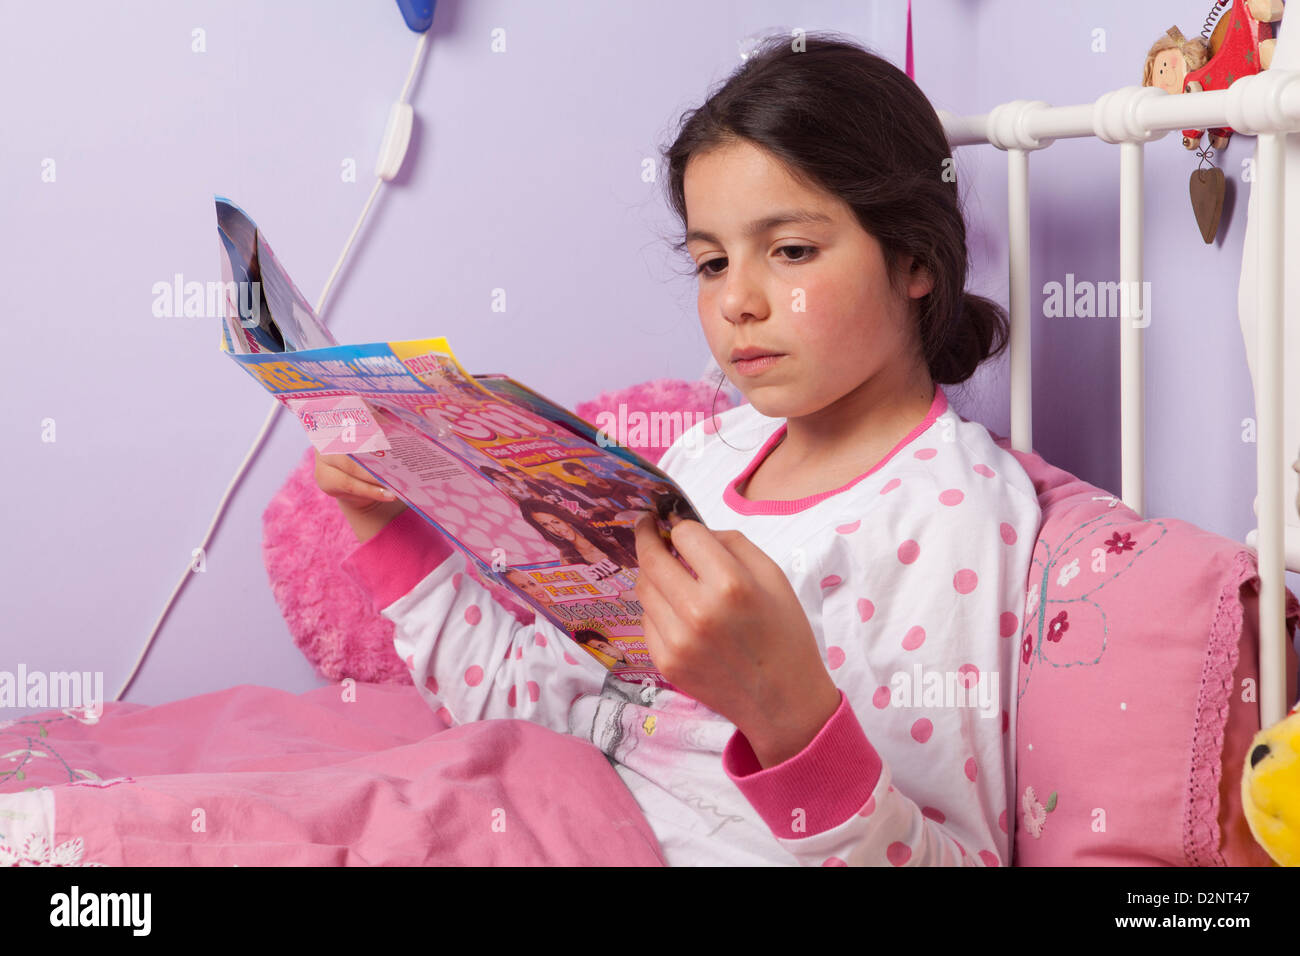 Jeune fille lit un magazine dans son lit Banque D'Images